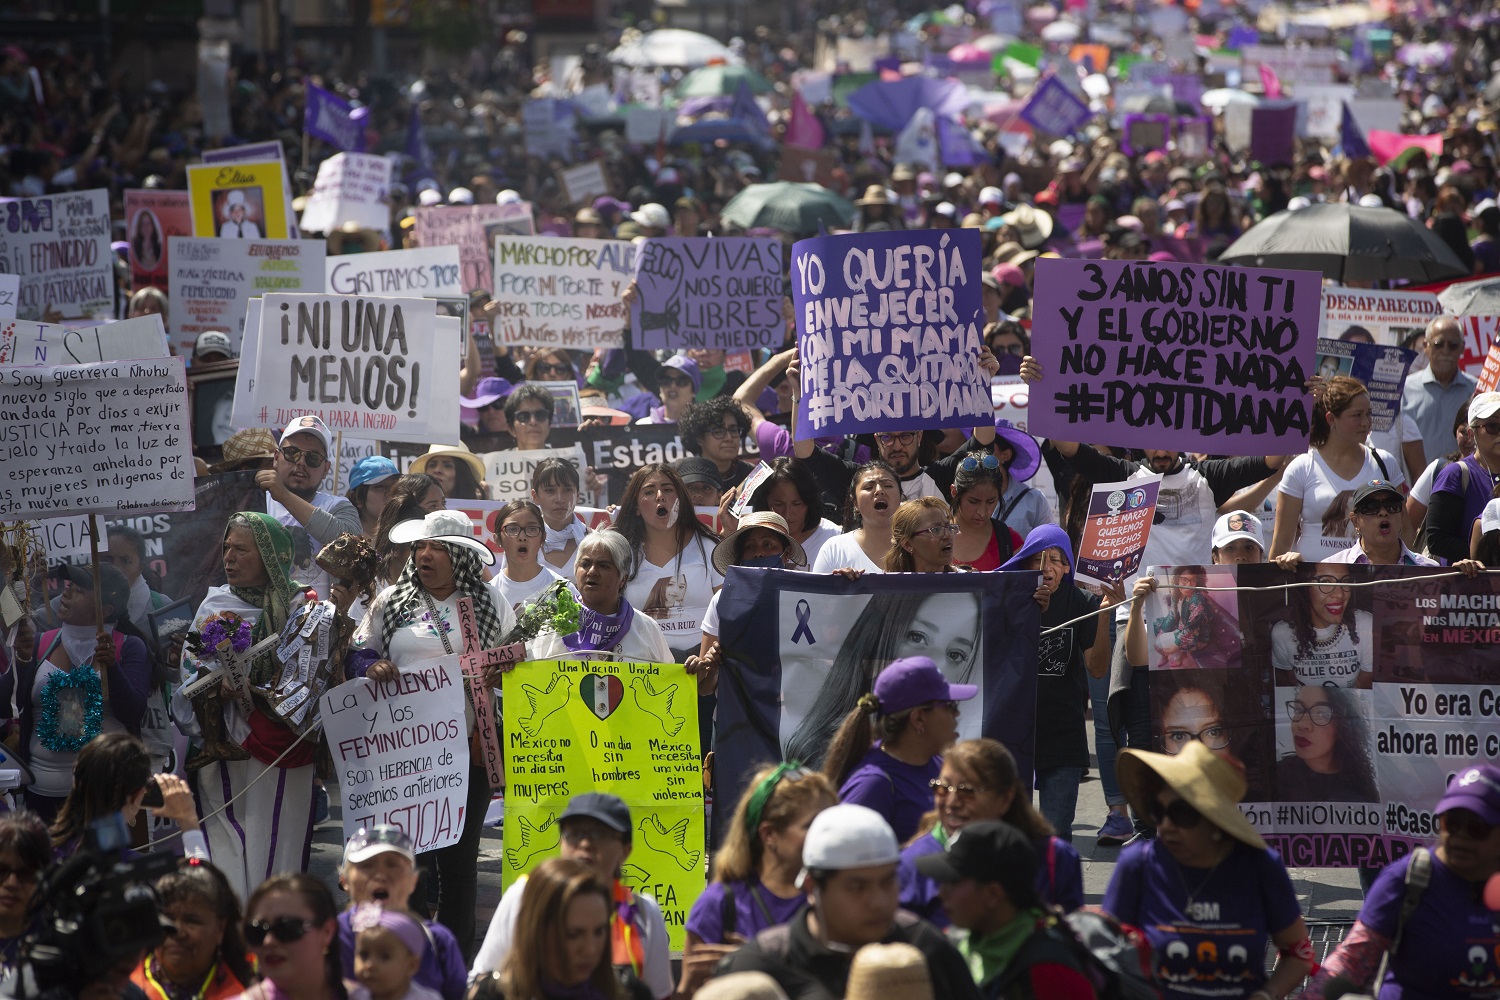 Marcha por el día internacional de la mujer en Ciudad de México, el 8 de marzo de 2020. Los contingentes protestaron en las principales capitales del país por los feminicidios, la desigualdad y el derecho al aborto | Foto: Mónica González